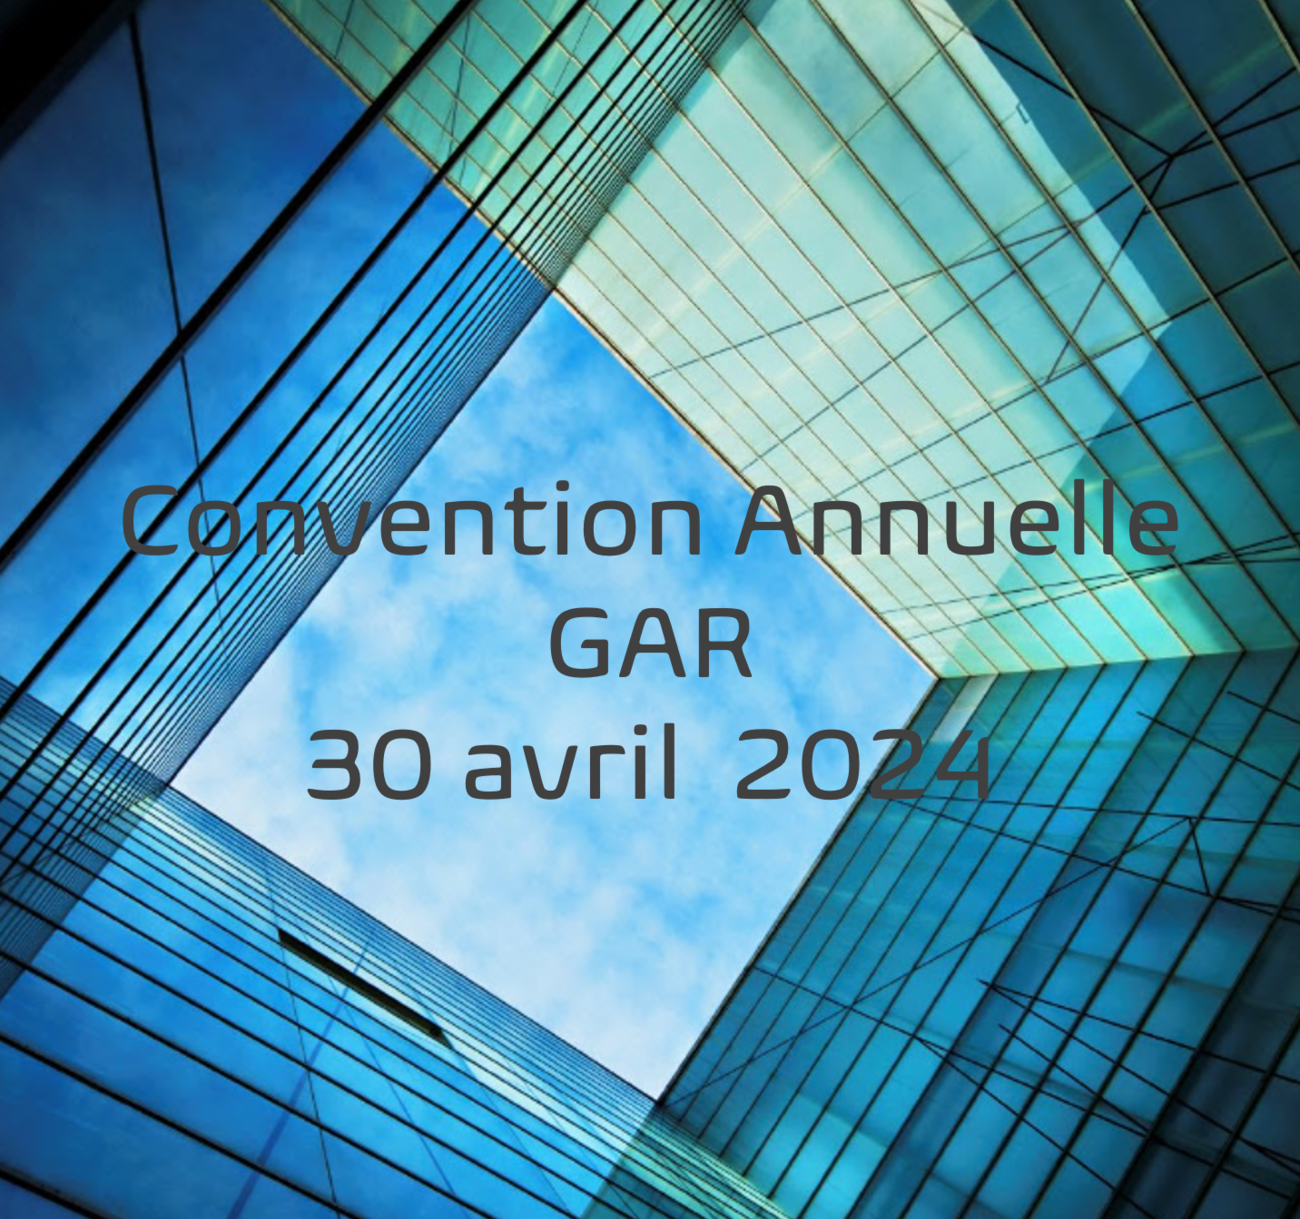 "Ensemble, faisons notre RESEAU lution !"   Convention GAR 2024 - Maison de la RATP - Espace du Centenaire - 189 Rue de Bercy - 75012 Paris